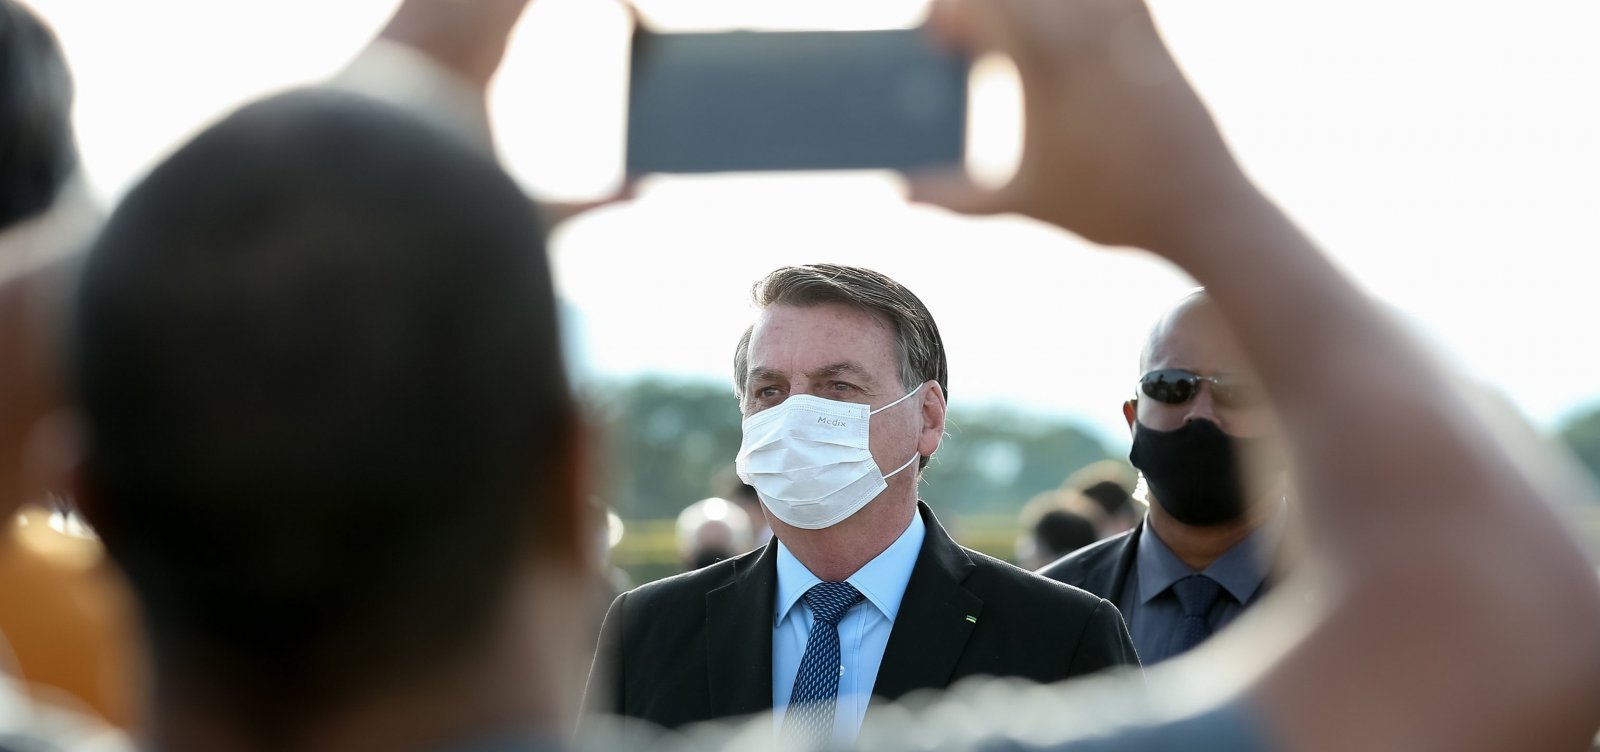 ['Acho que não vai vingar', diz Bolsonaro sobre projeto das fake news]